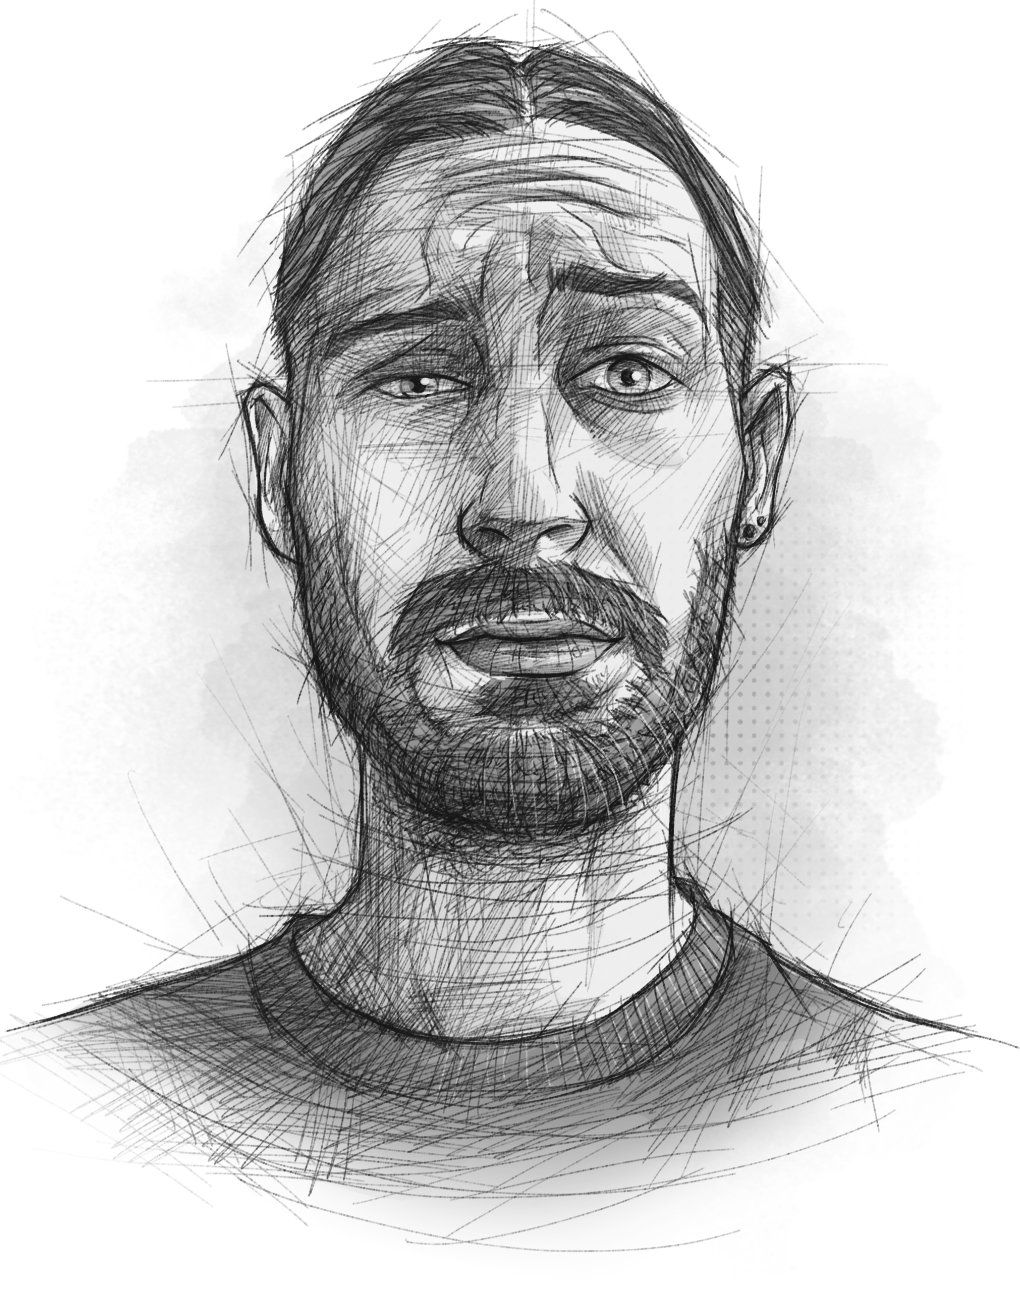 Ein skizzenhaft illustriertes Selbstportrait, das den Illustrator mit Grimasse mit verdutzten Blick zeigt